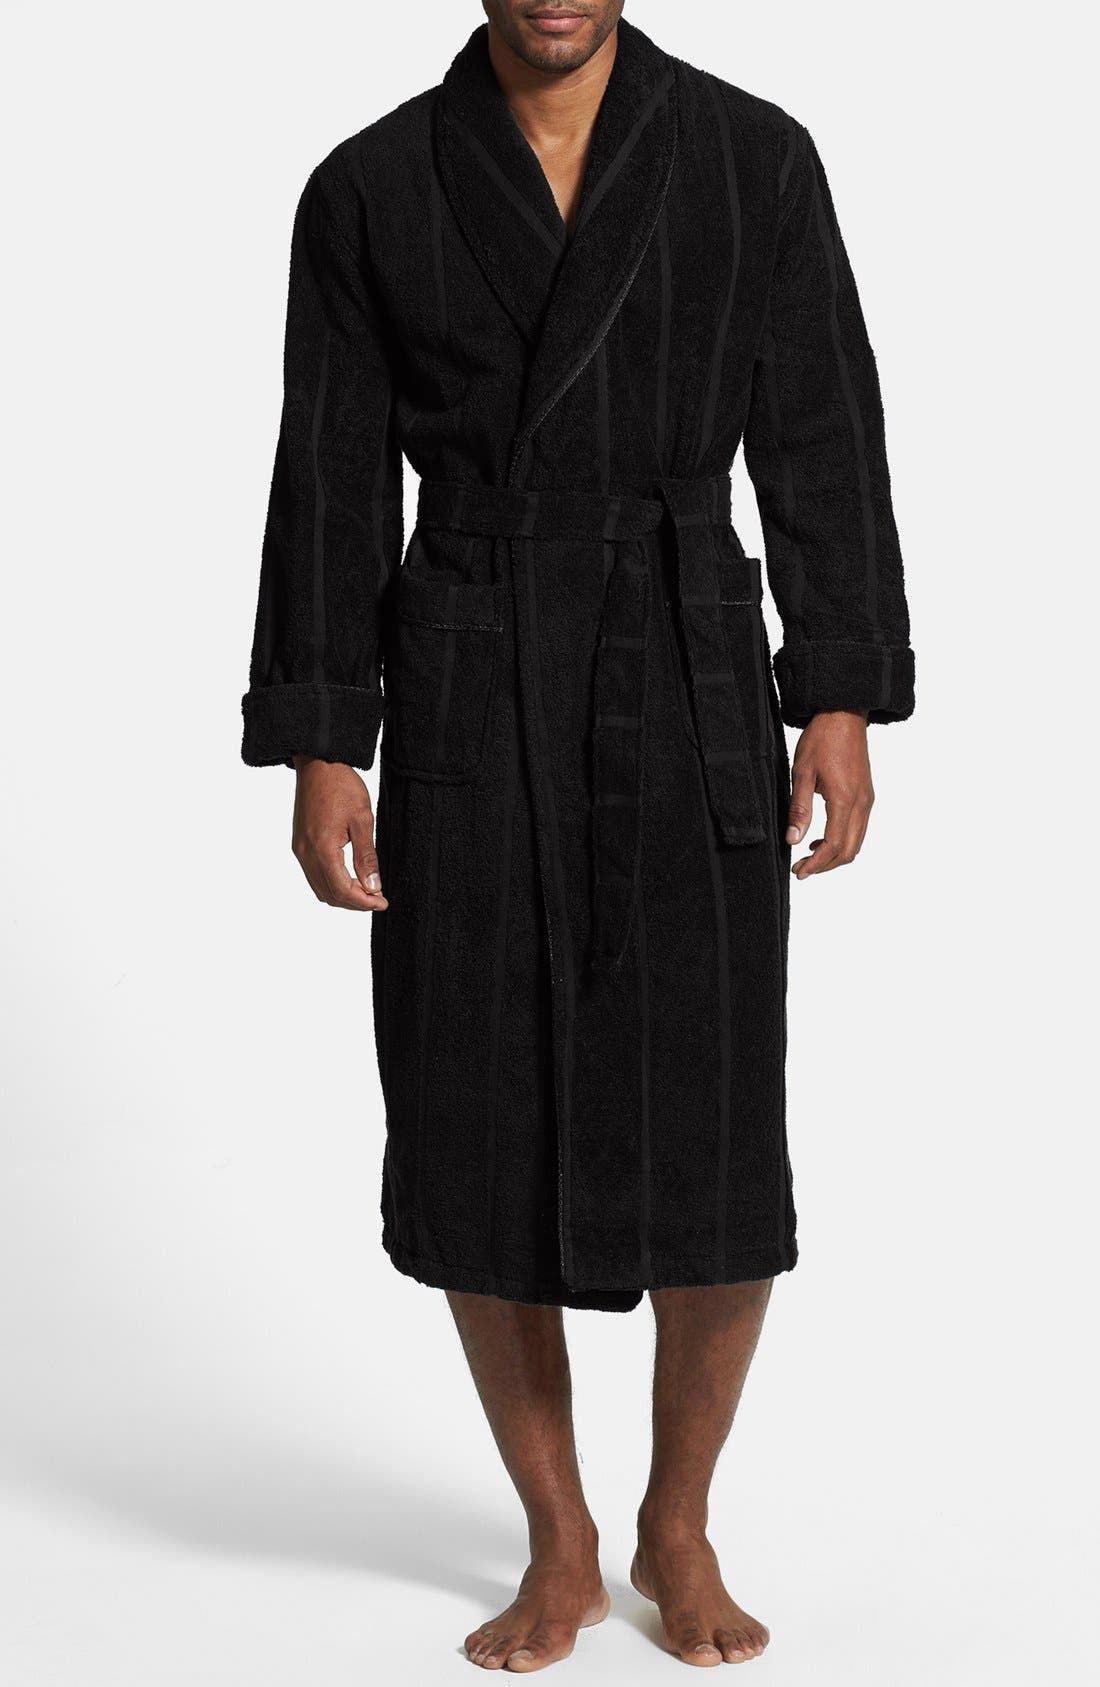 Black Robe  Buy Black Robe online in India